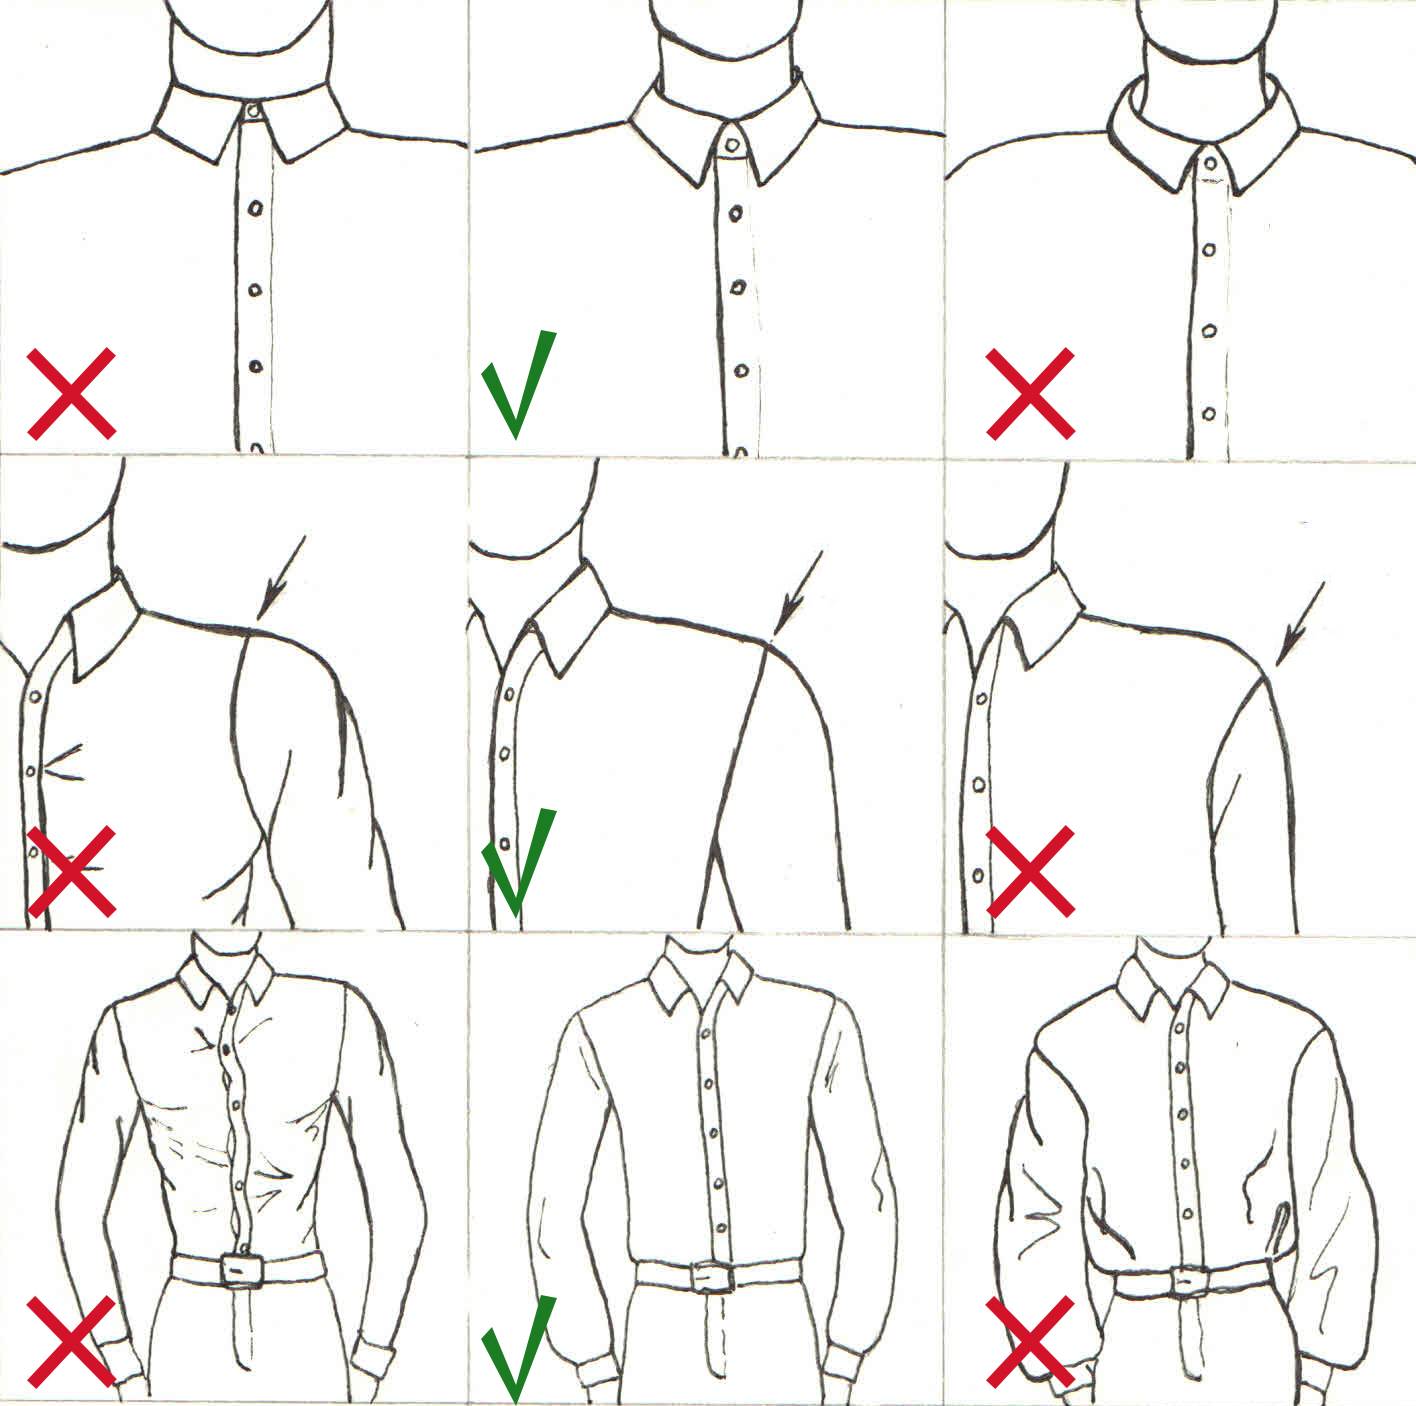 Как определить размер мужских и женских рубашек?